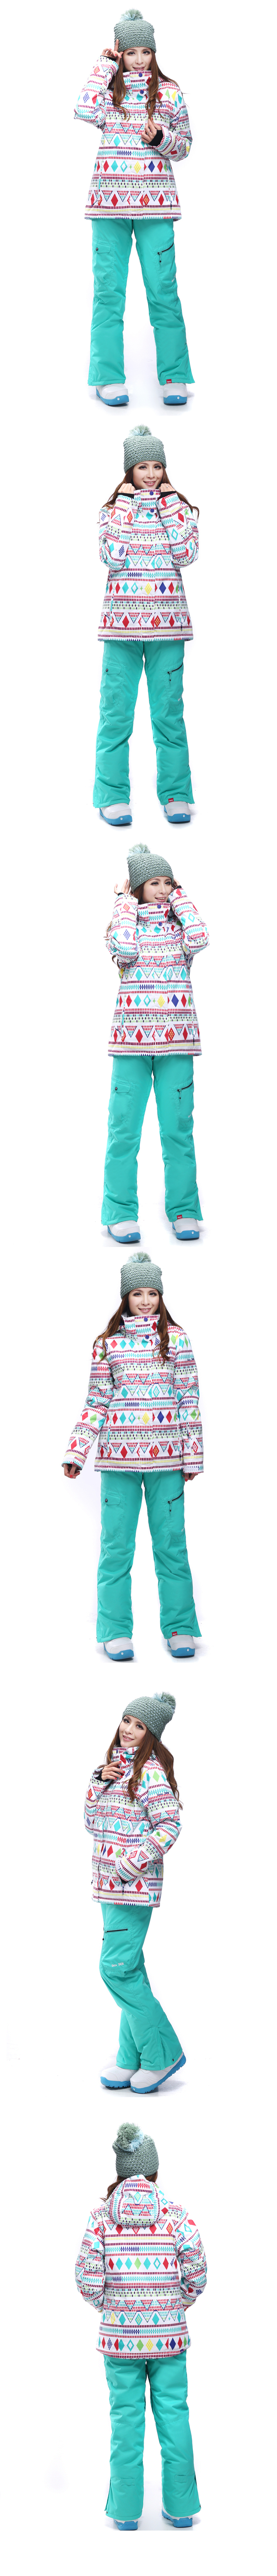 Женский зимний лыжный костюм Gsou SNOW, женский костюм для сноуборда ROXY, женская спортивная зимняя горнолыжная одежда